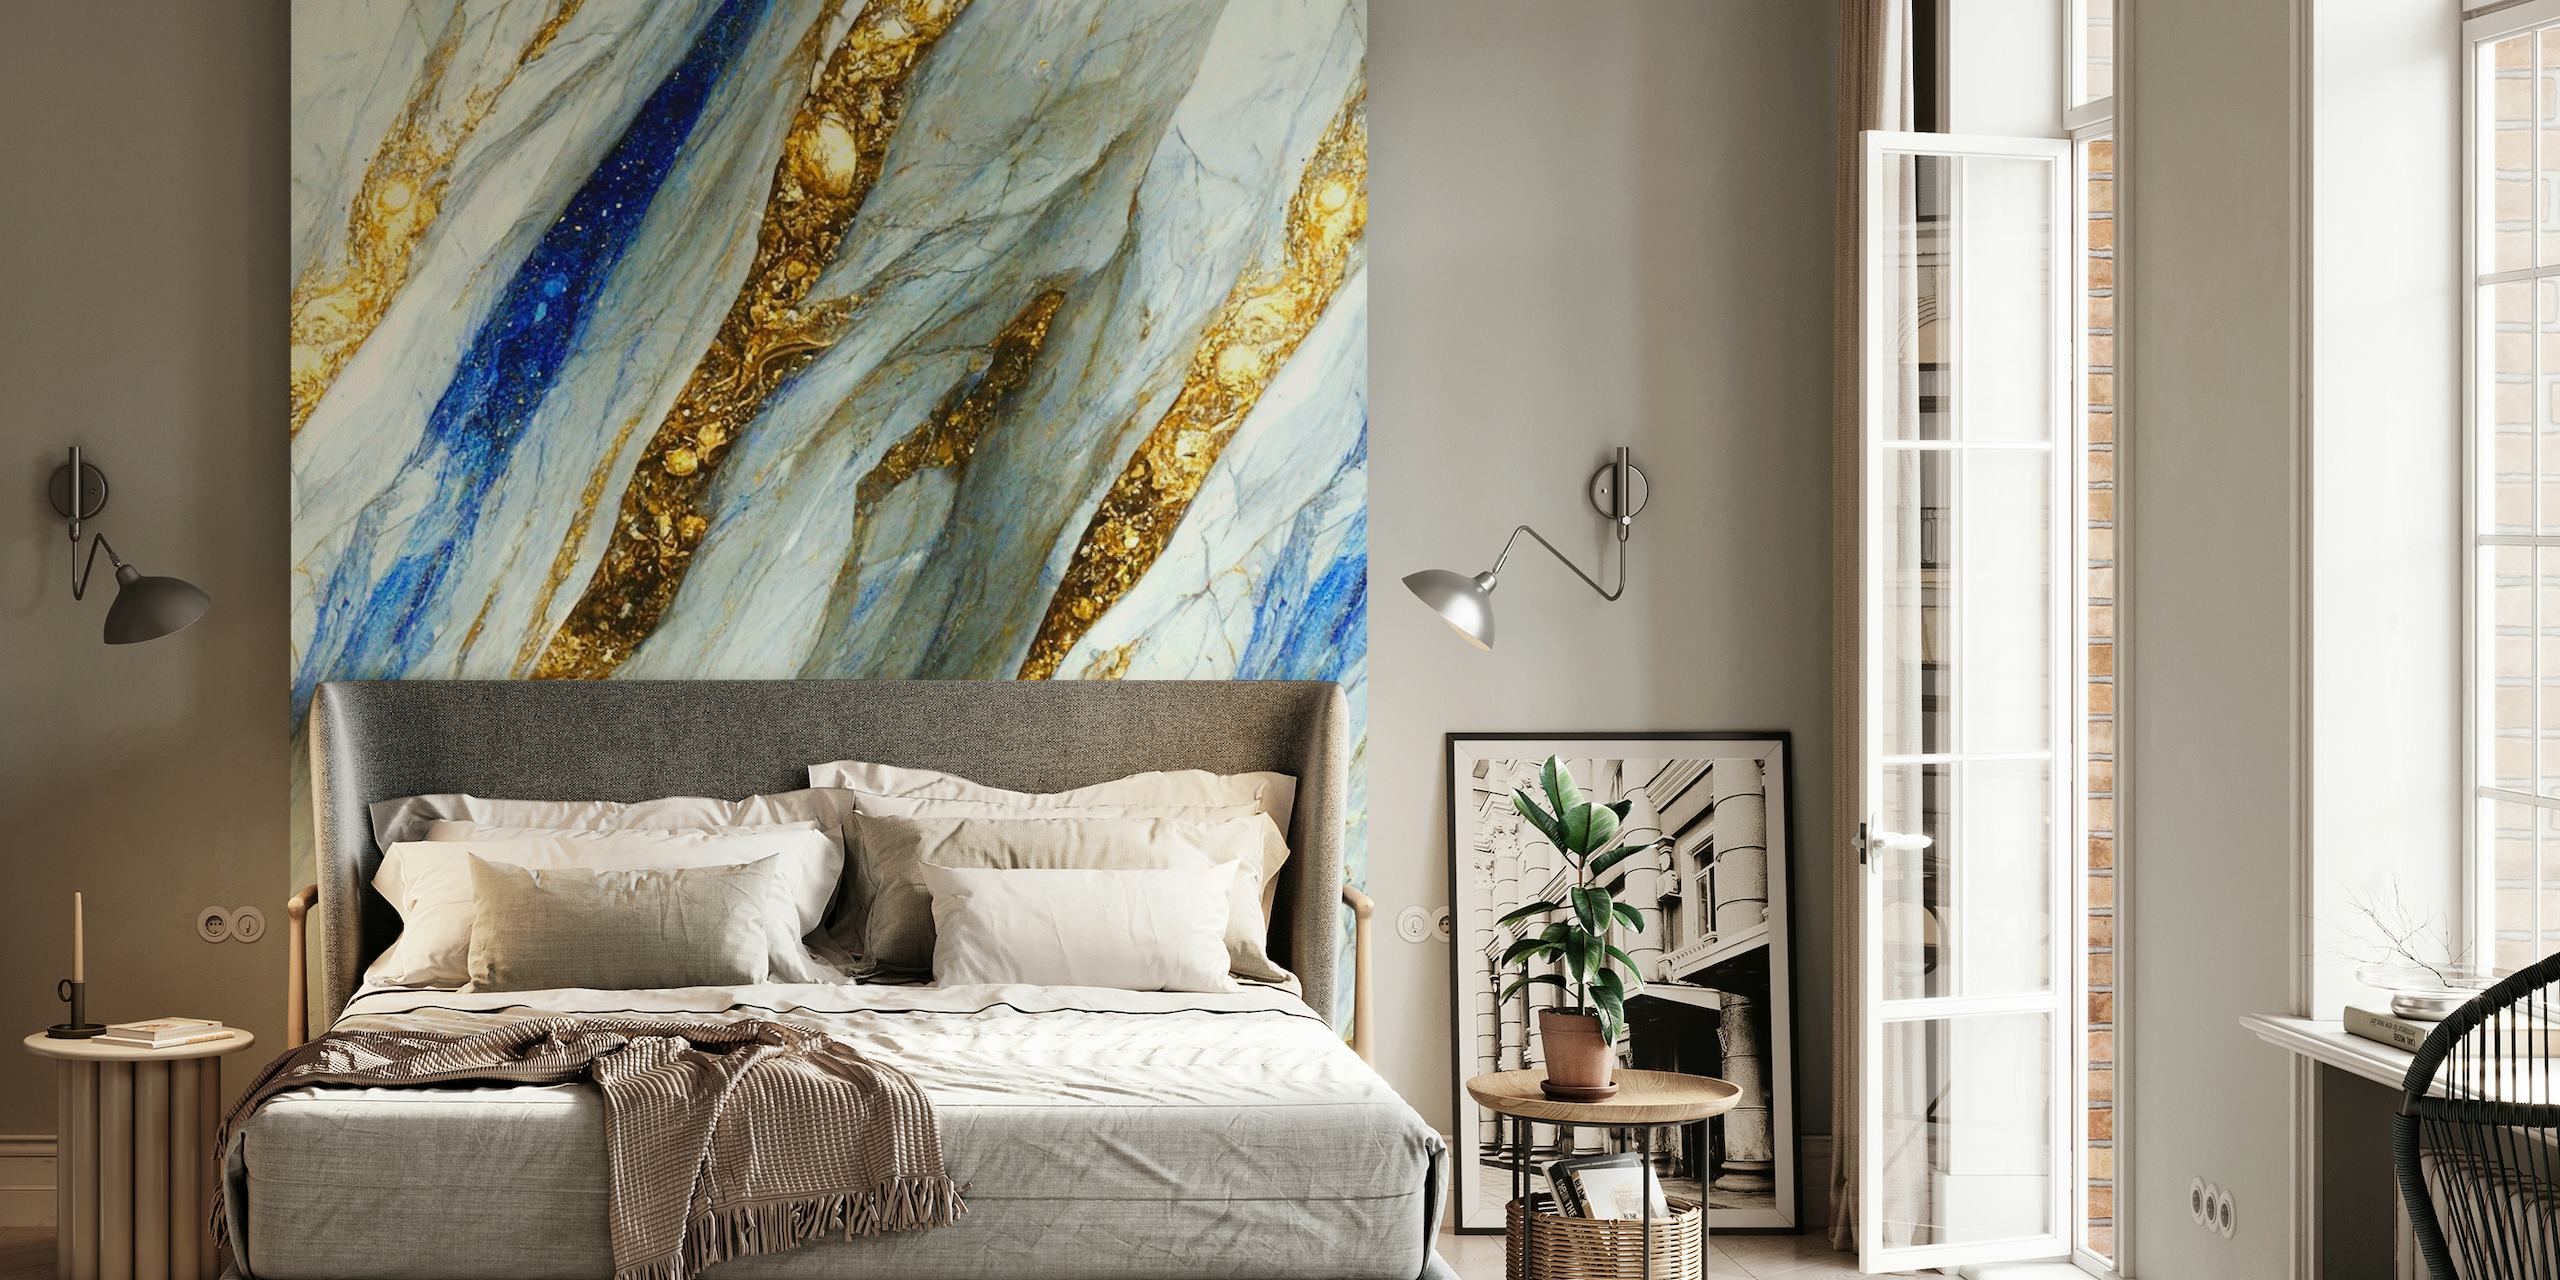 Elegant fotobehang met gouden, blauwe en witte marmerpatronen die lijken op stromende rivieren van vloeibaar goud en edelstenen.